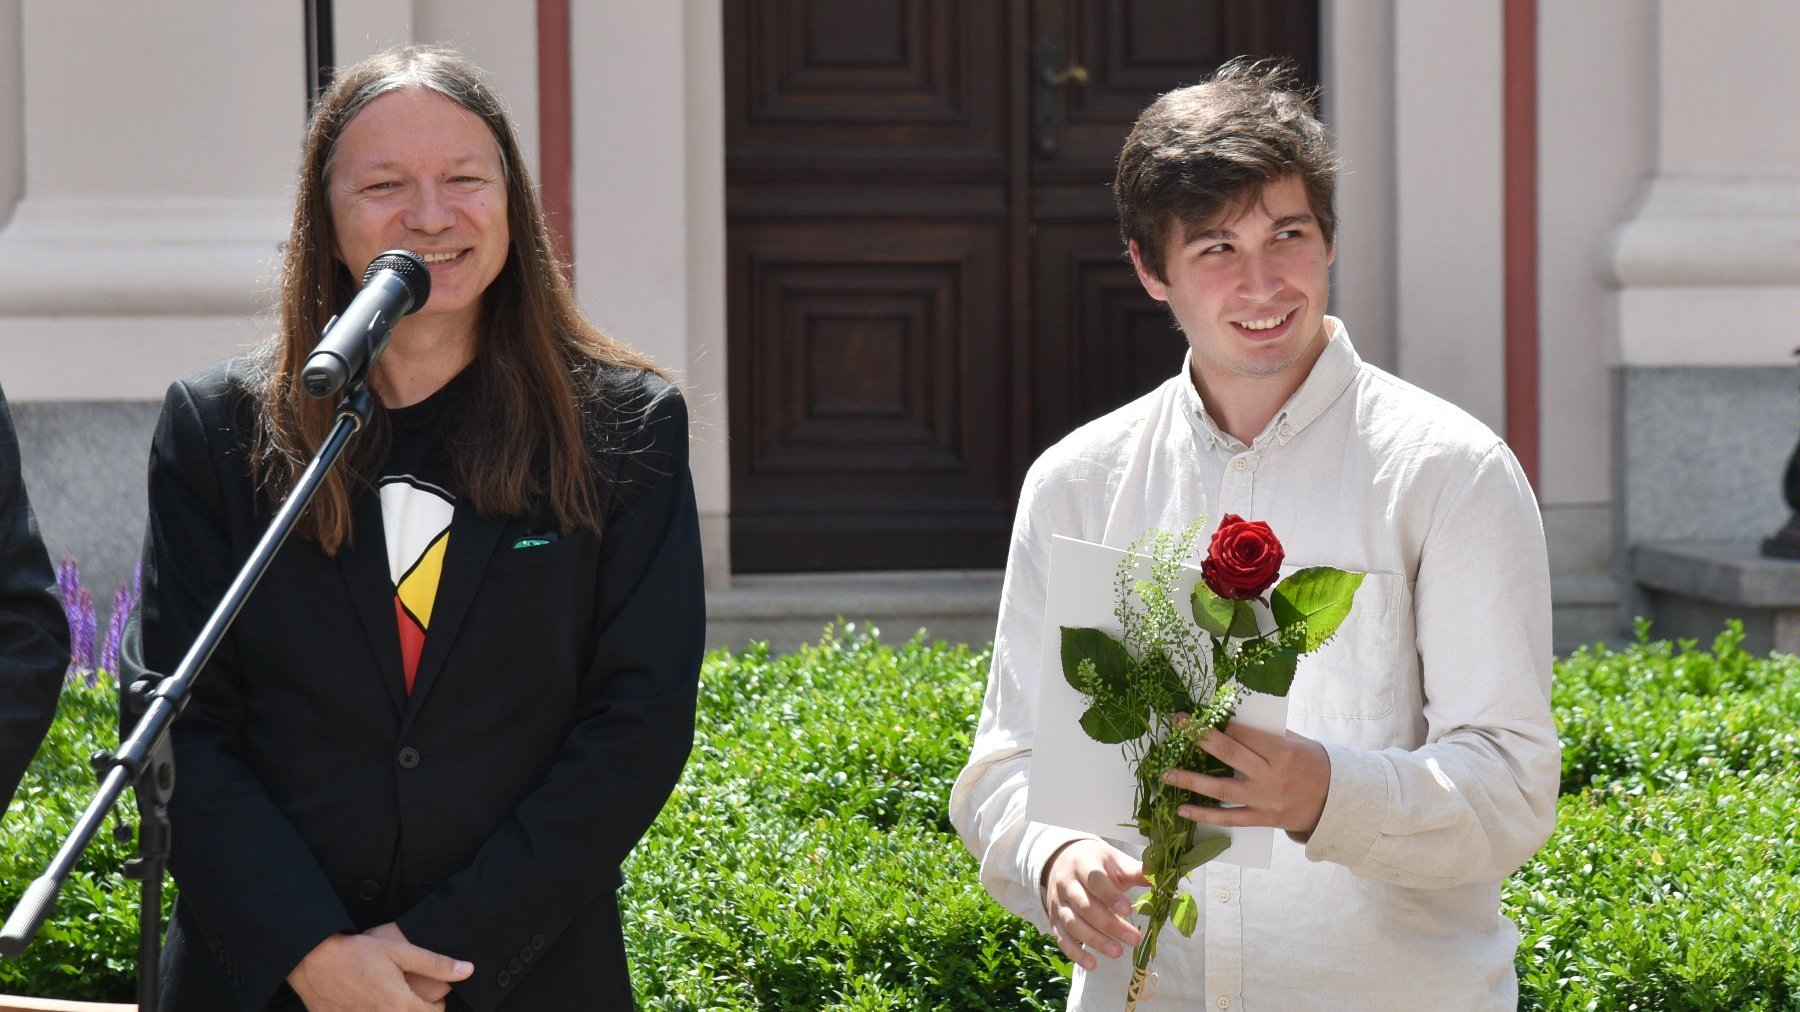 Na zdjęciu dwóch mężczyzn, jeden przy mikrofonie, drugi trzyma różę